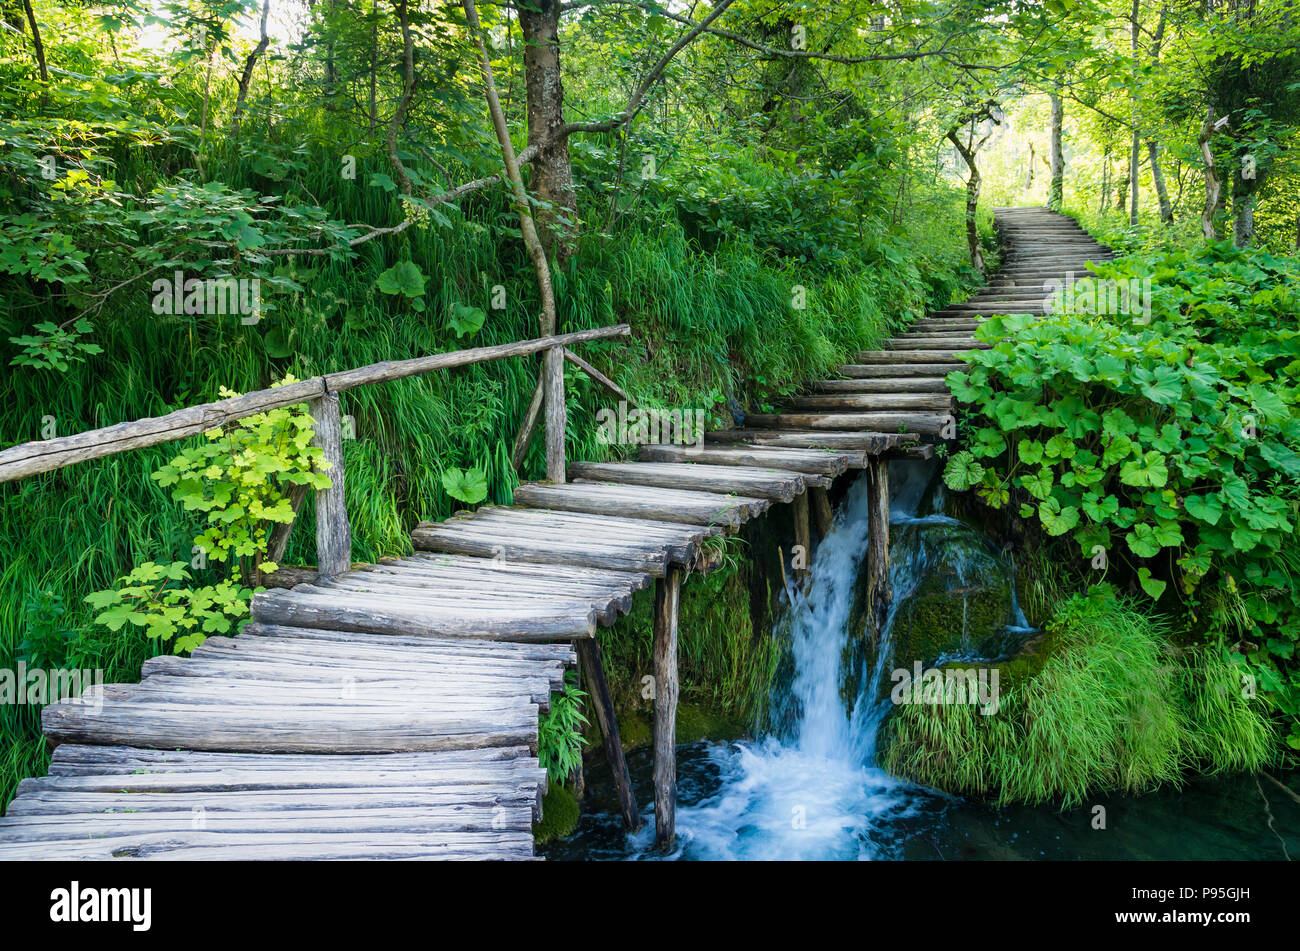 El Parque Nacional de los lagos de Plitvice (Croacia). Ruta de madera a través de verdes bosques y sobre el agua Foto de stock